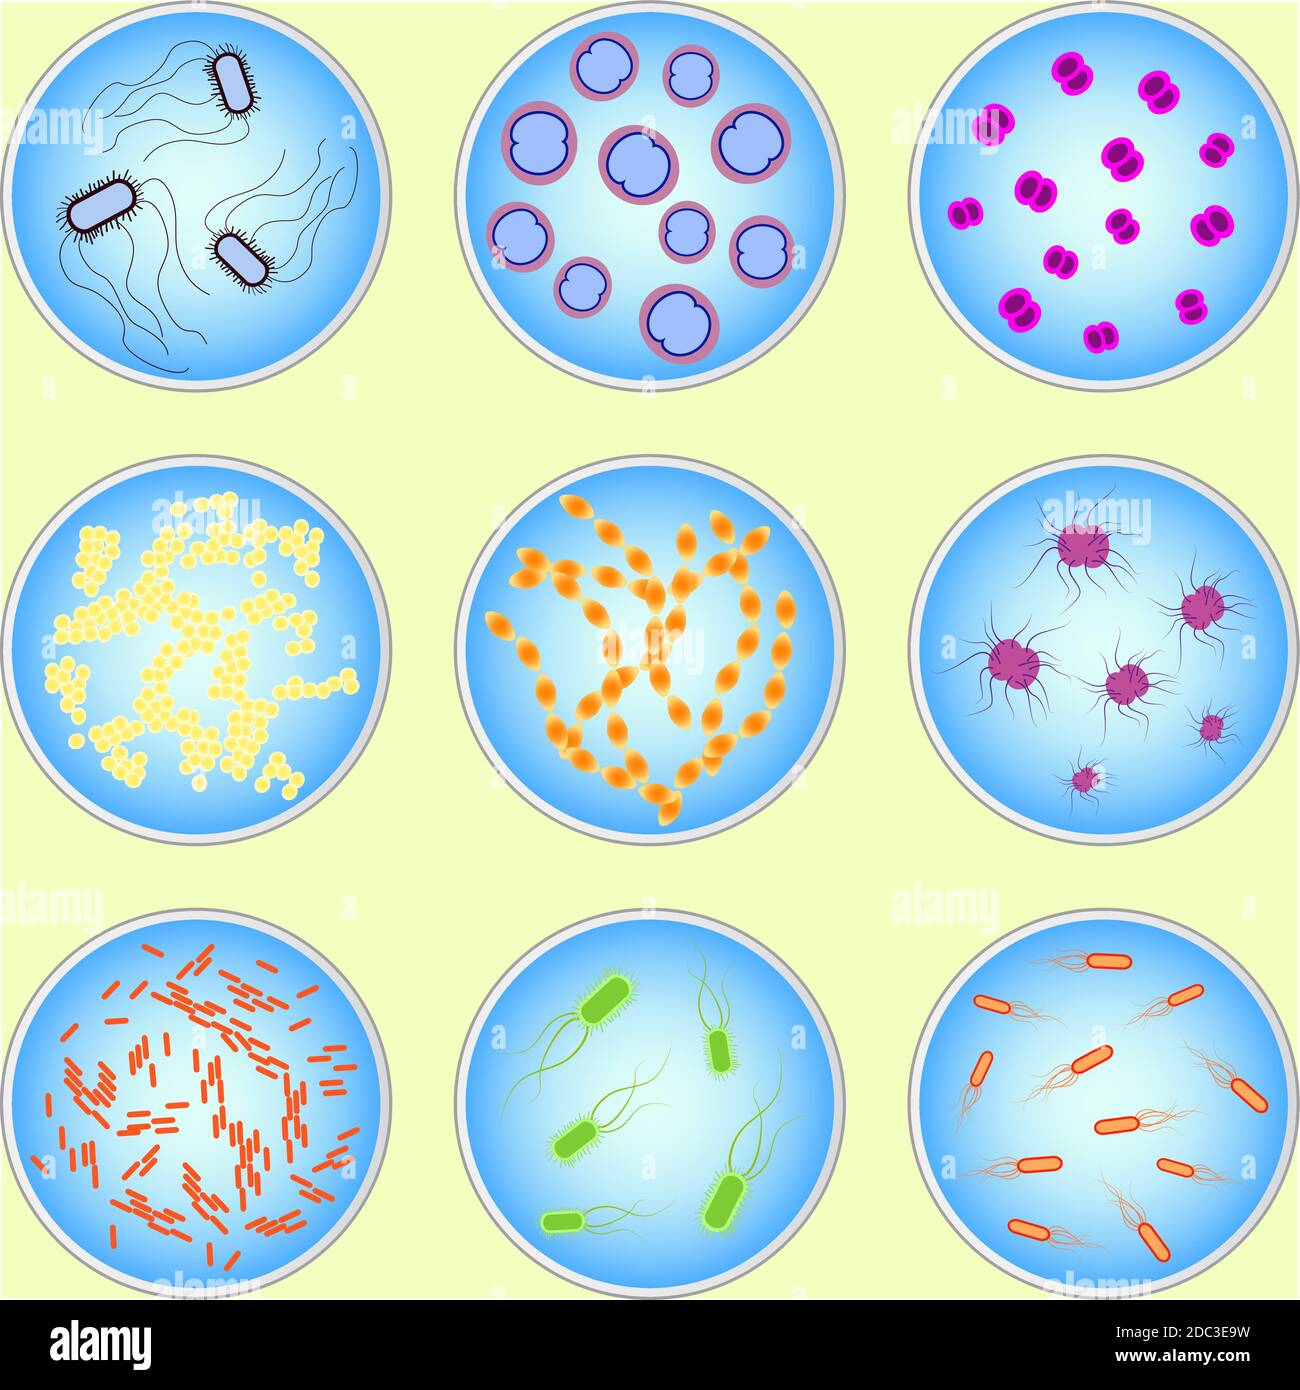 Изображением различных видов микробов